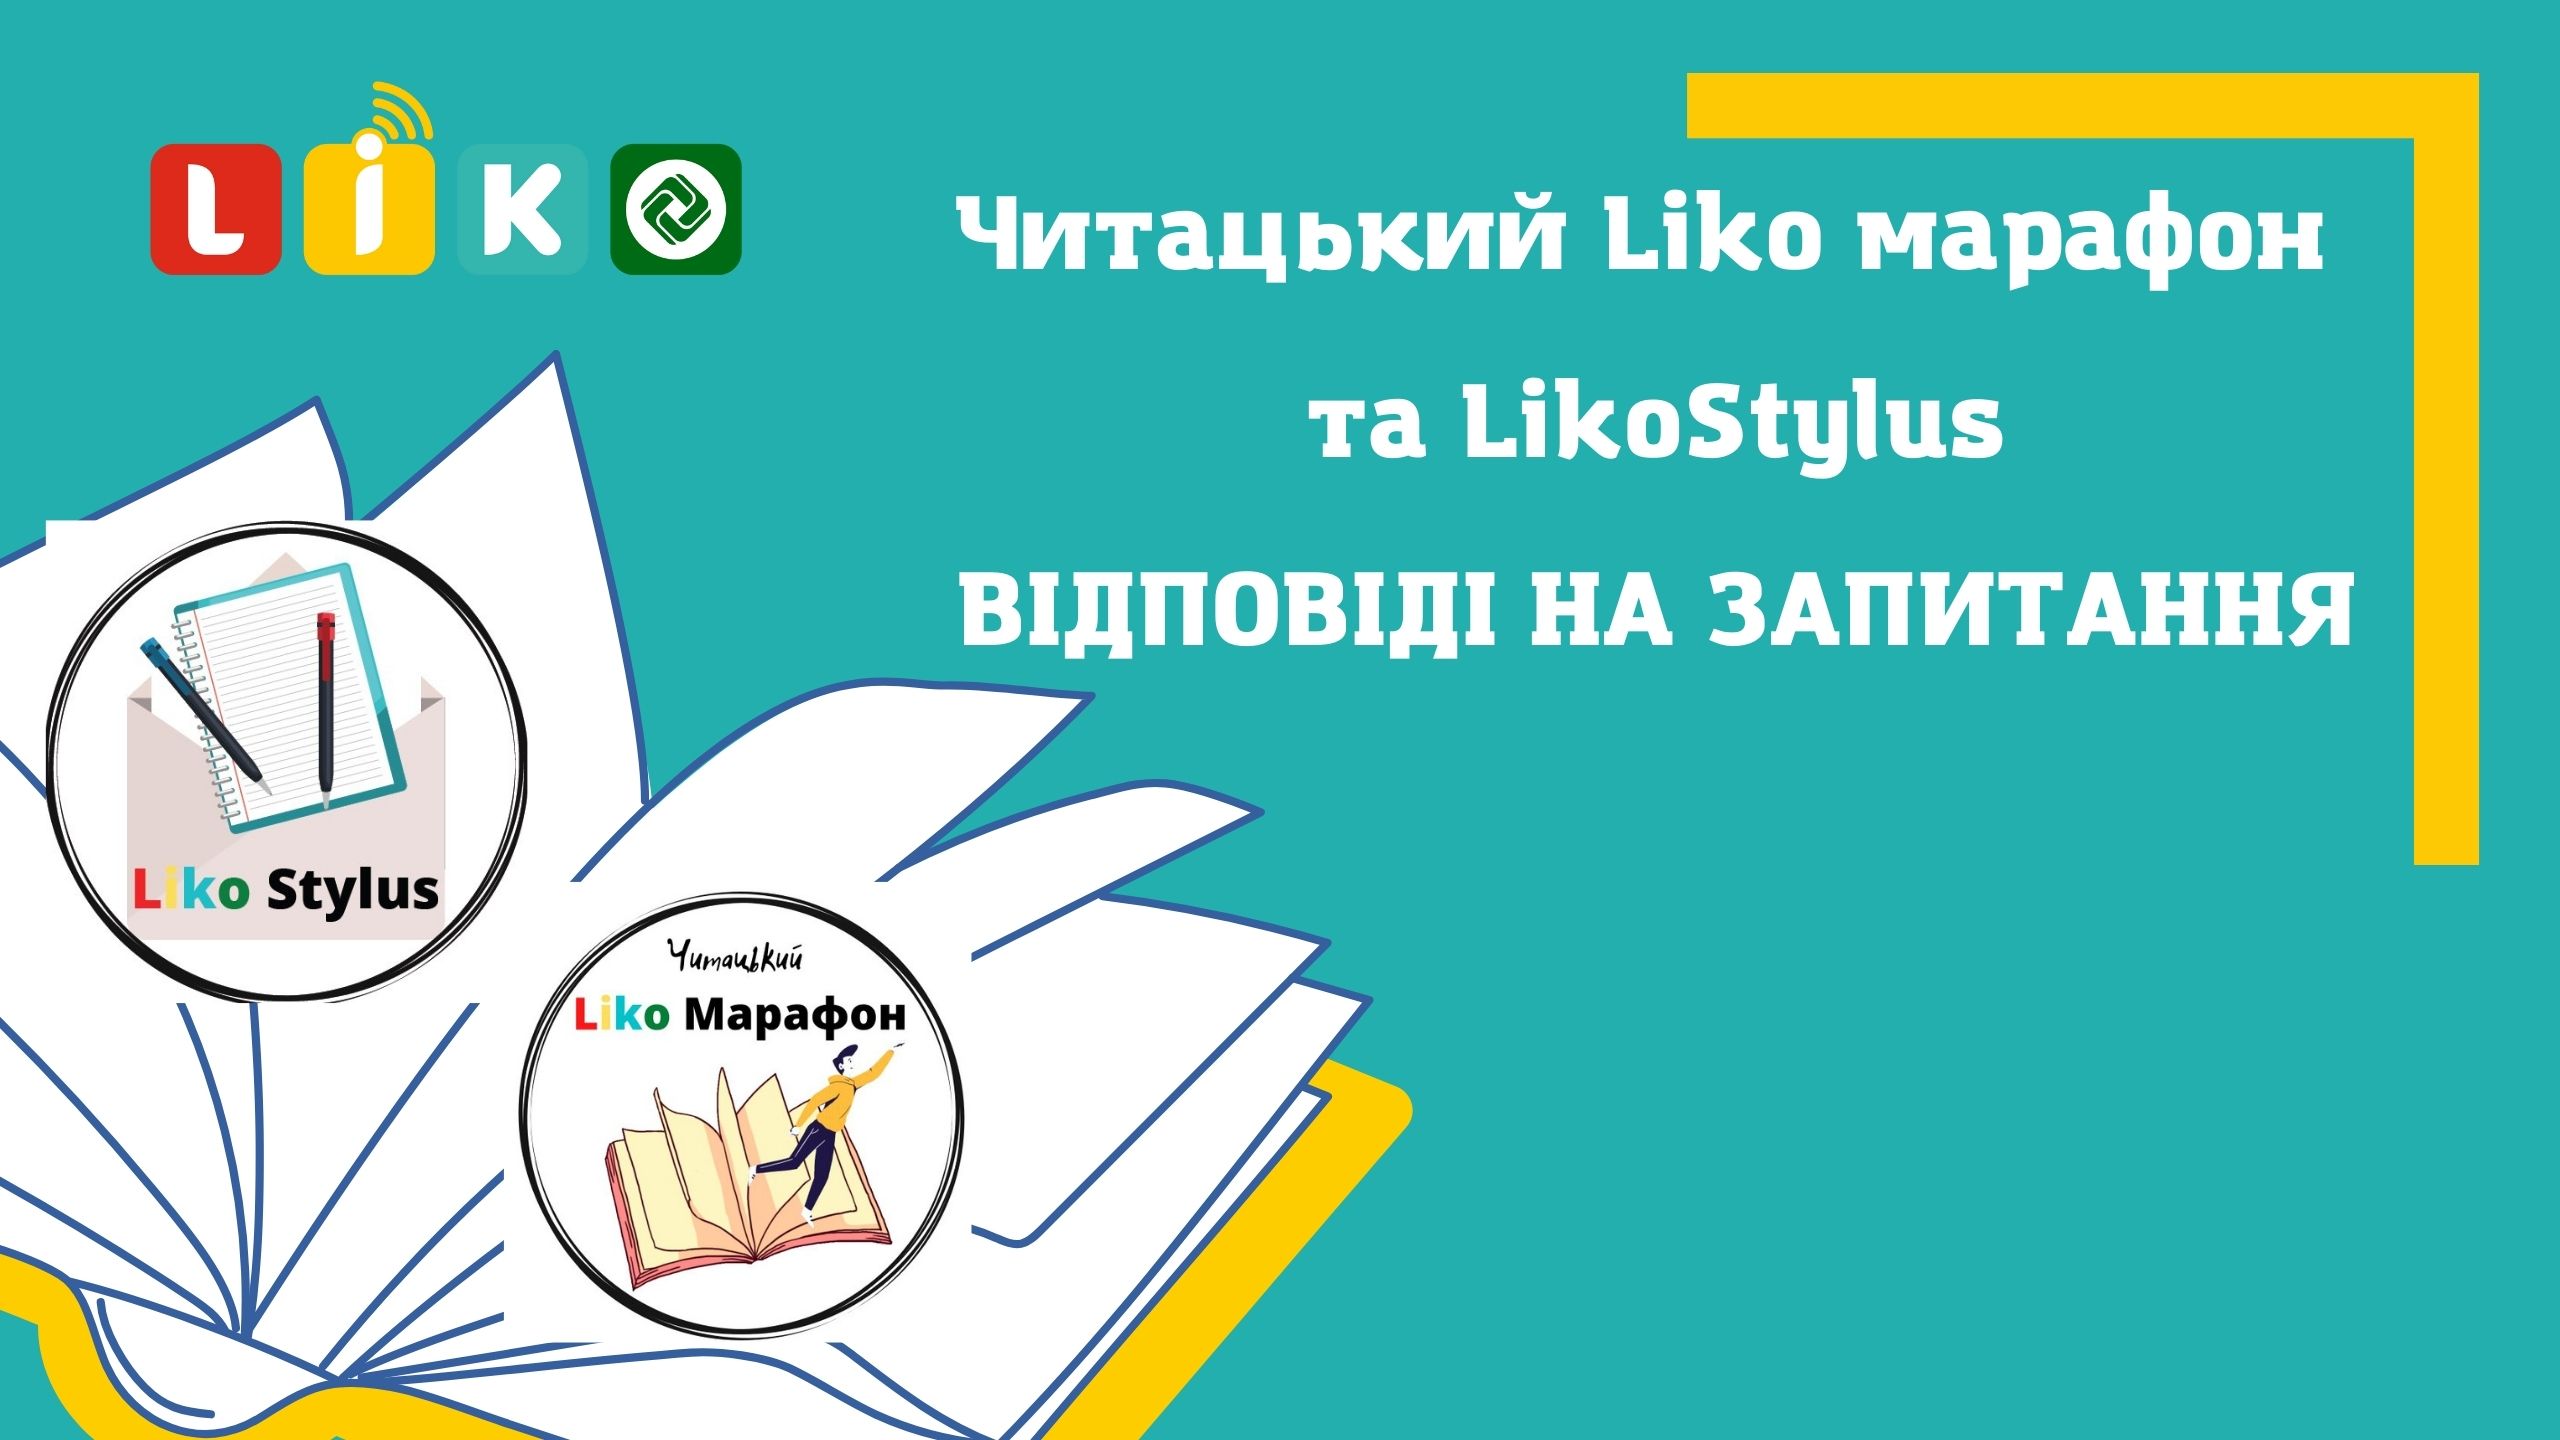 Читацький Liko марафон та LikoStylus: путівник літературними конкурсами